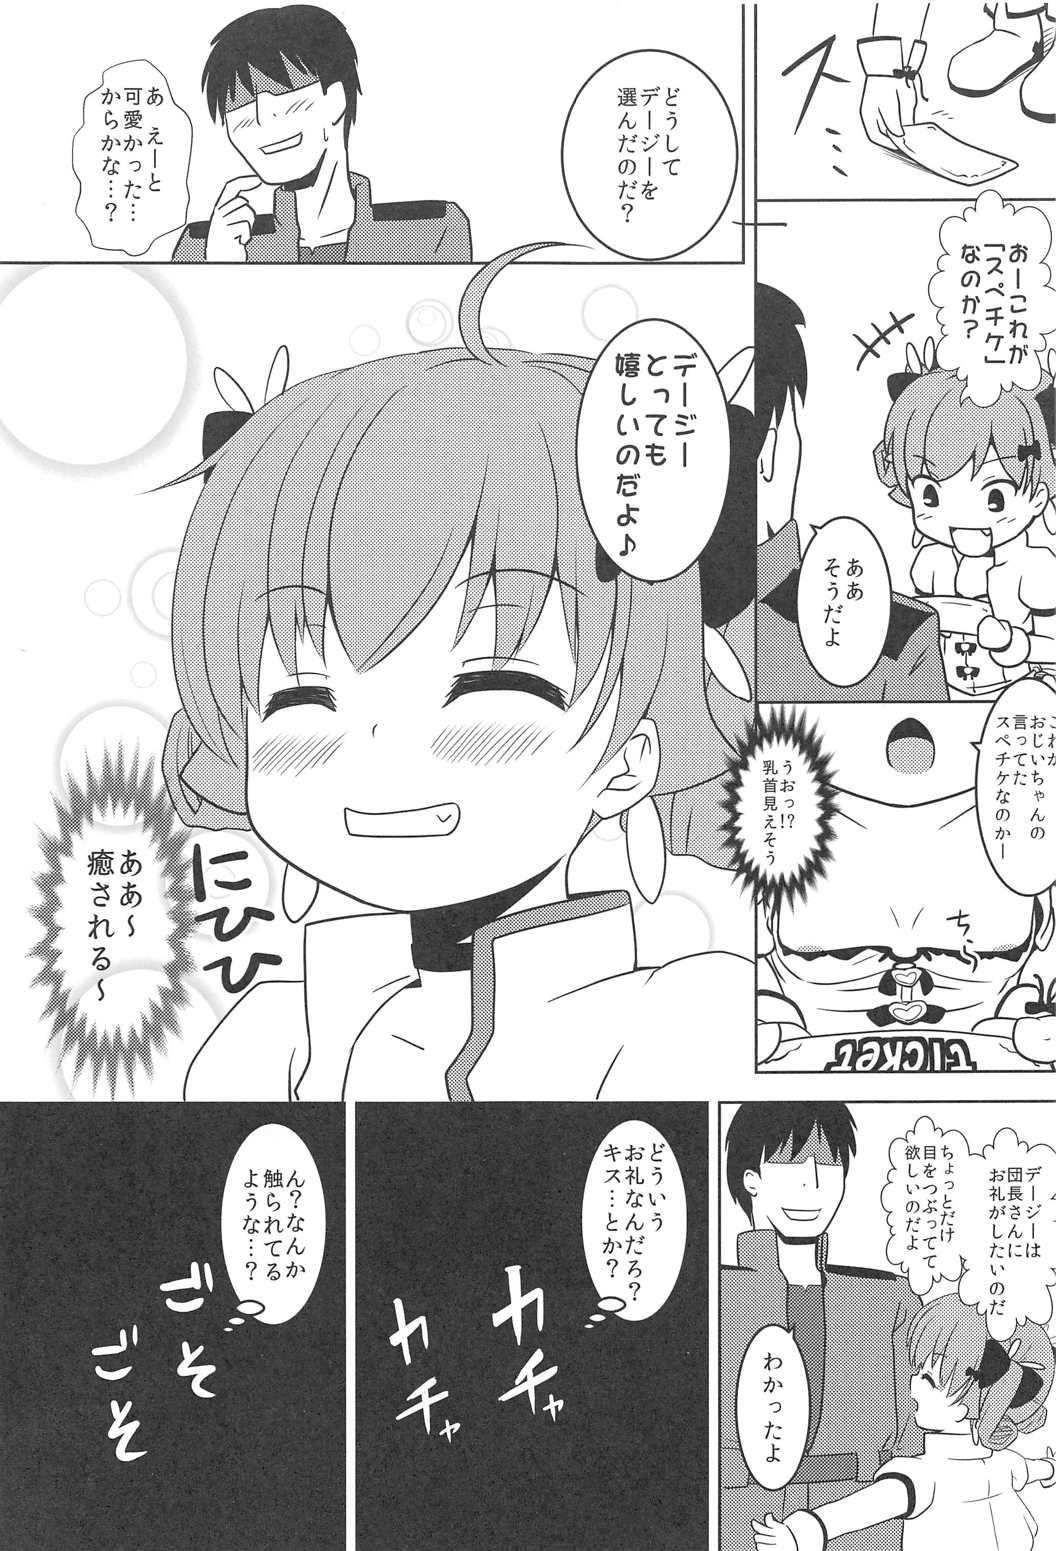 Str8 Daisy wa Ojii-chan ni Iroiro Oshierareta no dayo - Flower knight girl Footfetish - Page 4